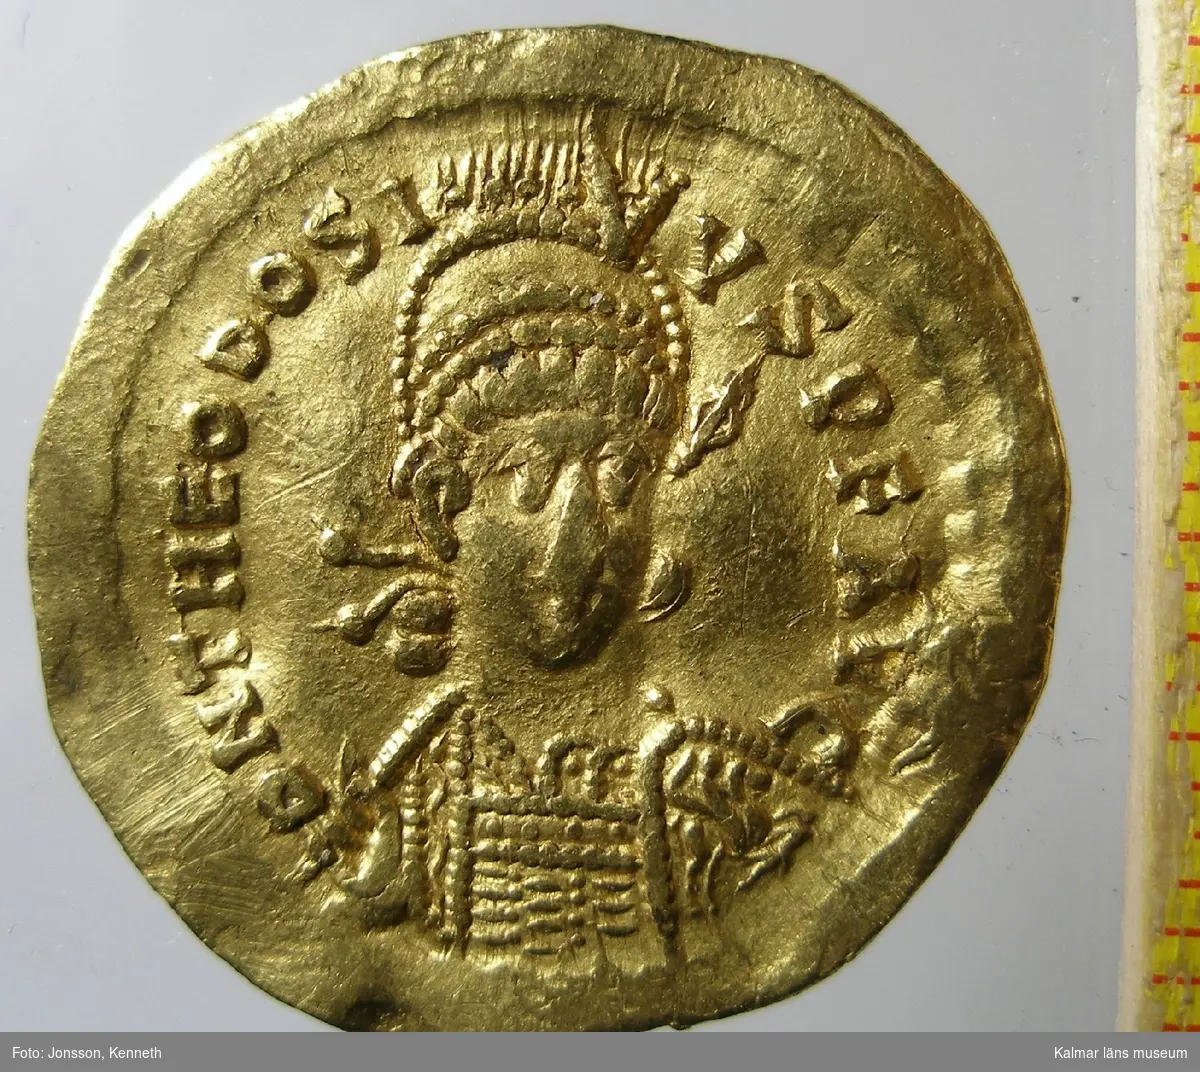 KLM 25381 Mynt, solidus, guld. Präglat för Theodosius II (408-450). Bestämning: F 294, RICX324.